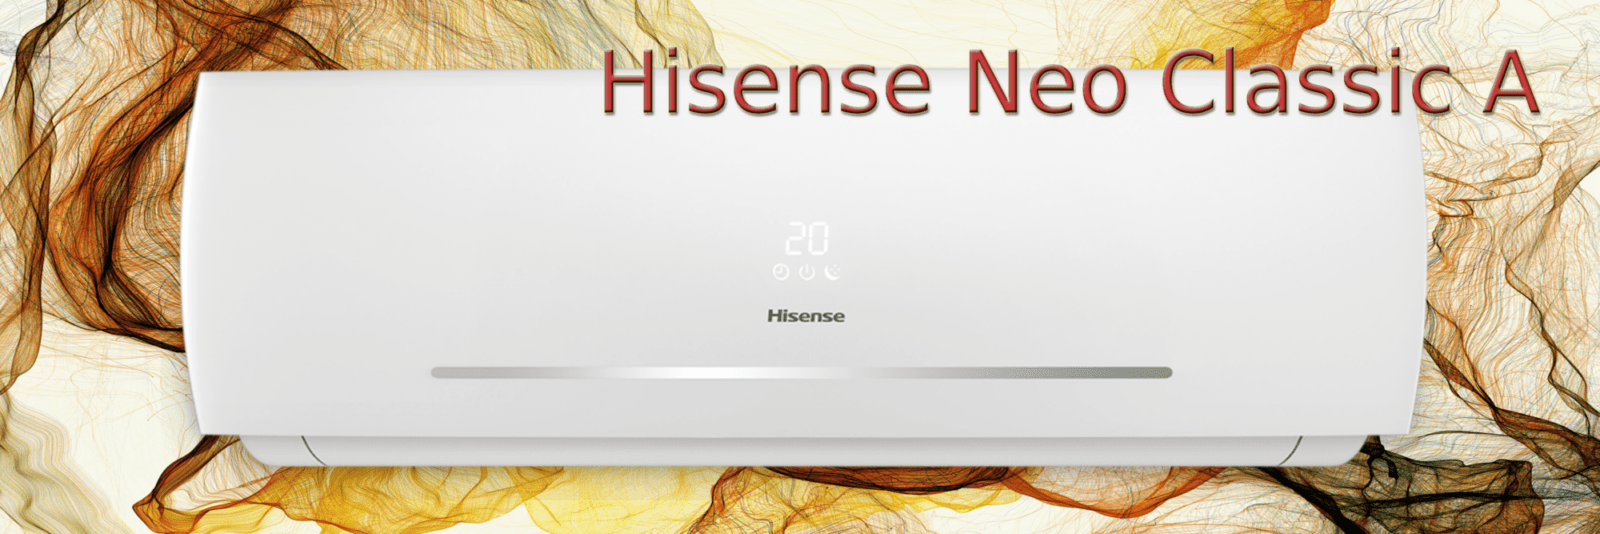 Hisense Neo Classic A